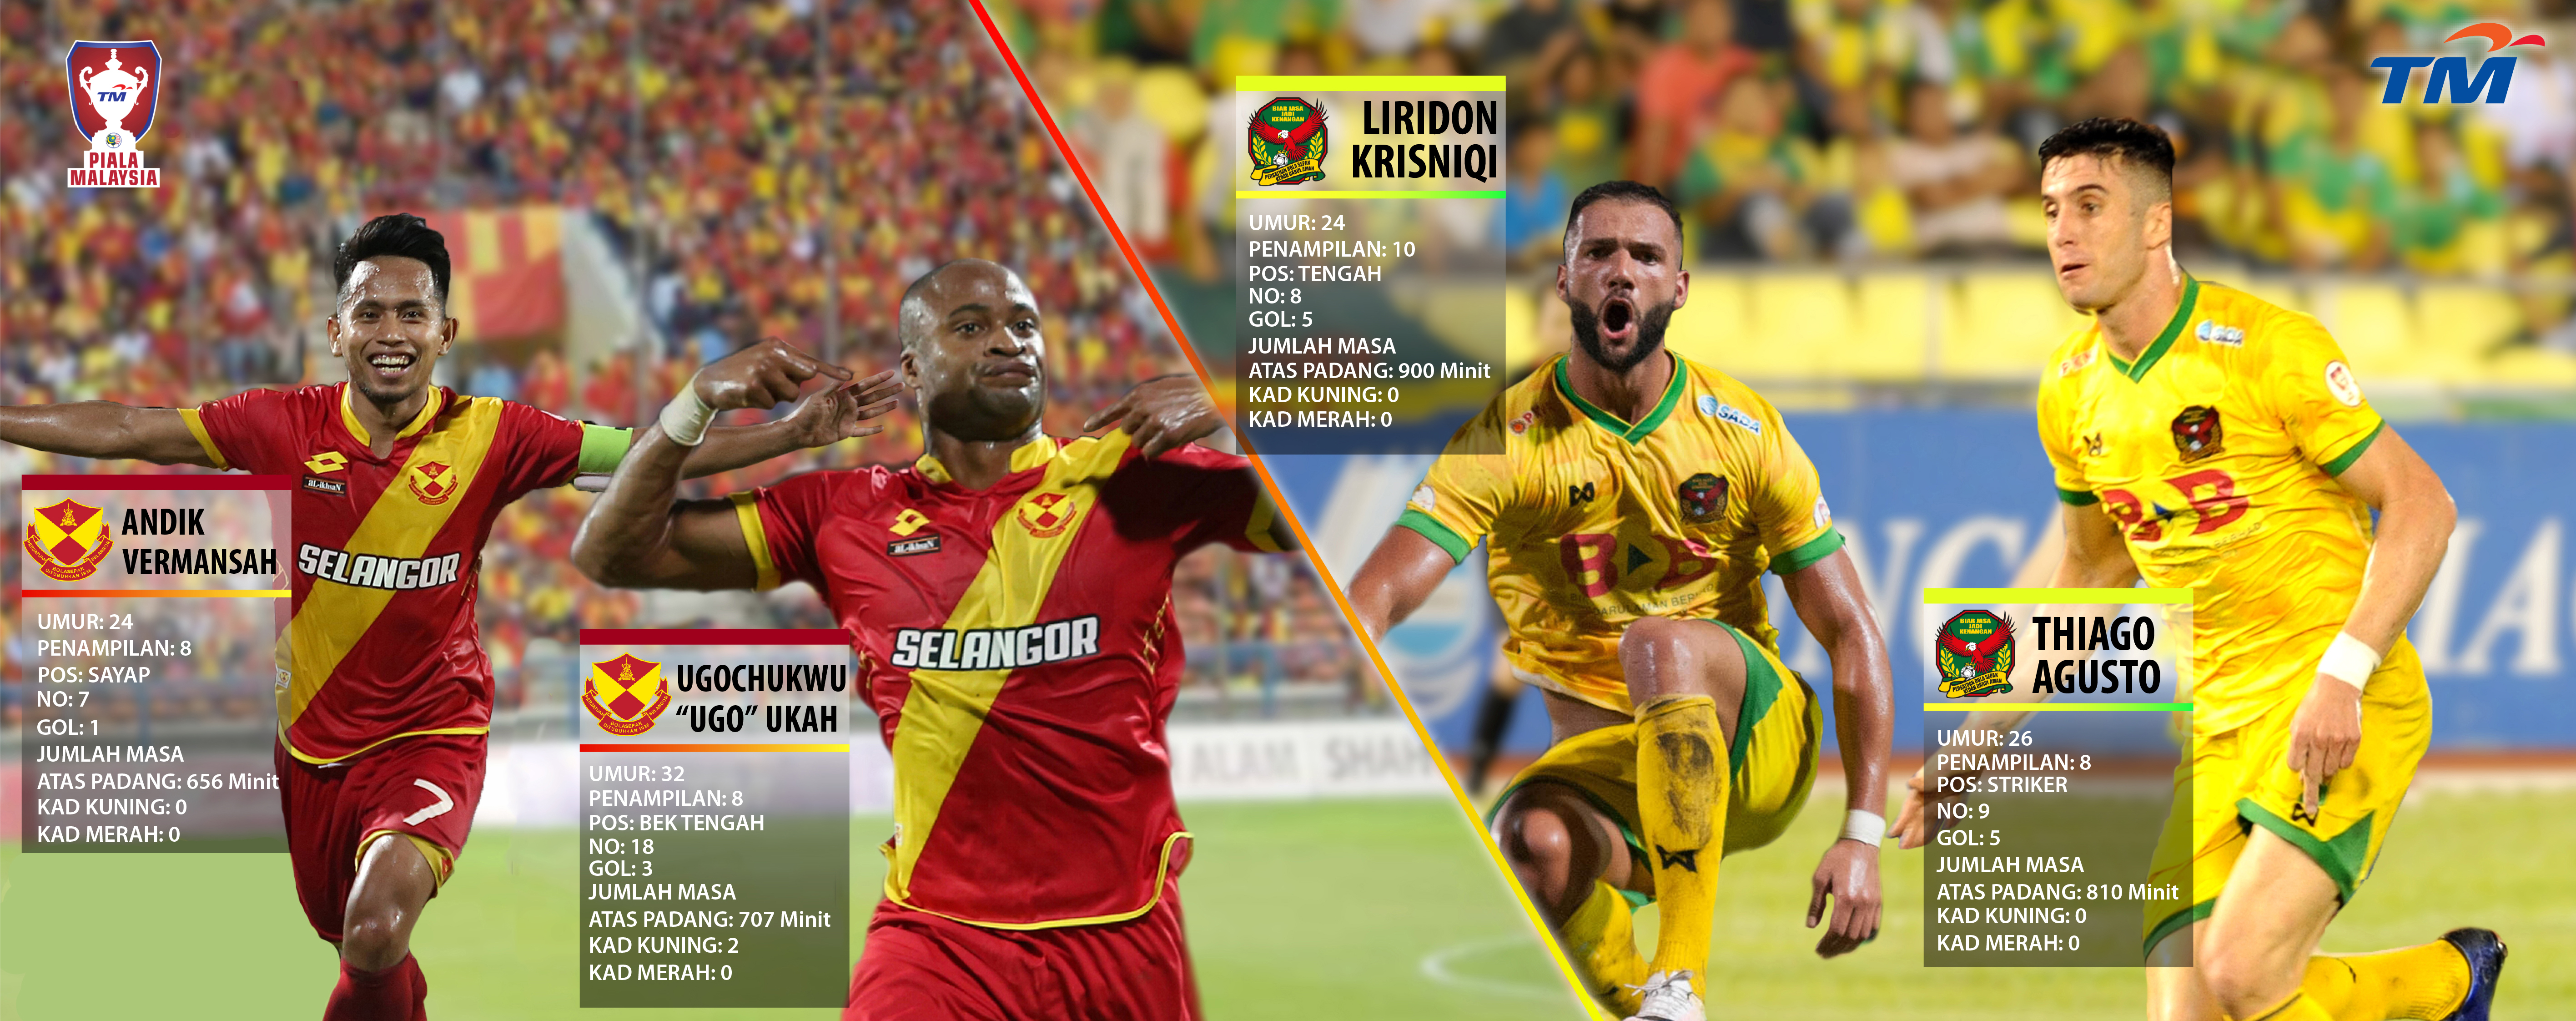 TM Piala Malaysia Pemain Tumpuan Akhir Kedah Lwn Selangor Goalcom